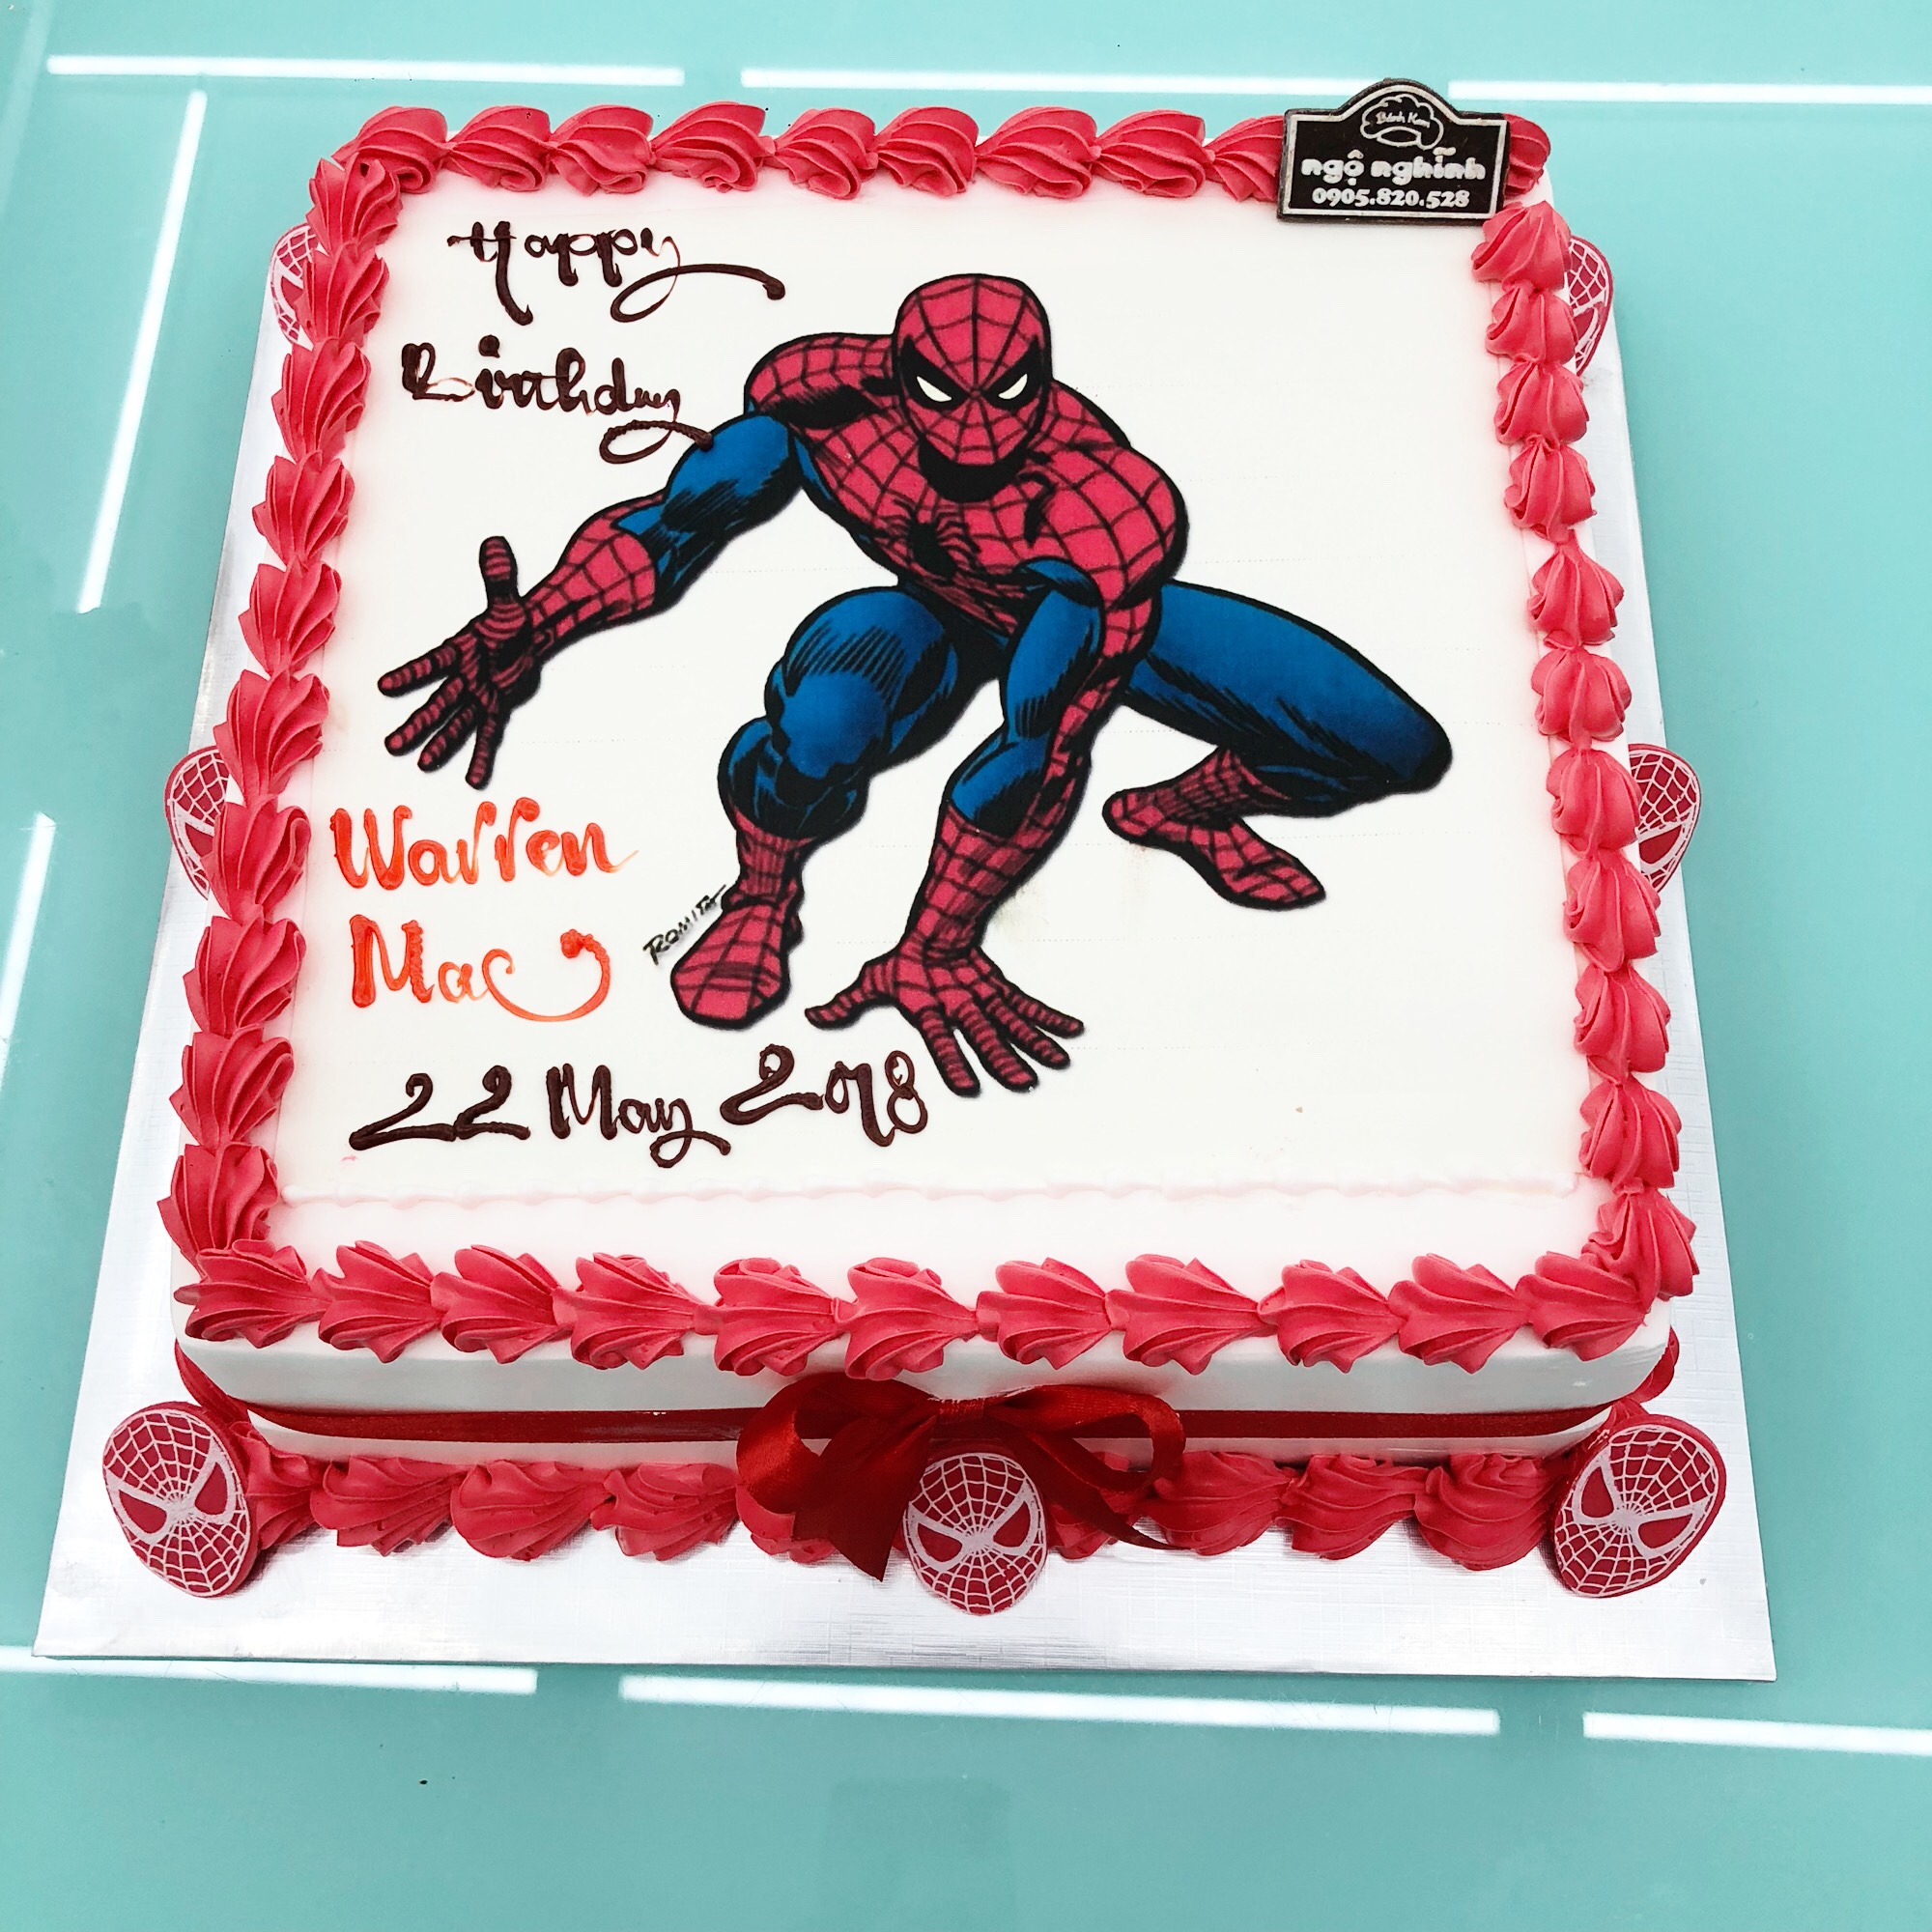 Bánh sinh nhật in hình người nhện đem lại cảm giác thích thú cho các fan hâm mộ của siêu anh hùng Marvel. Không chỉ ngon miệng và độc đáo với hình ảnh ngộ nghĩnh của nhân vật chính, bánh còn là món quà ý nghĩa vô cùng để dành cho người thân yêu trong ngày sinh nhật.